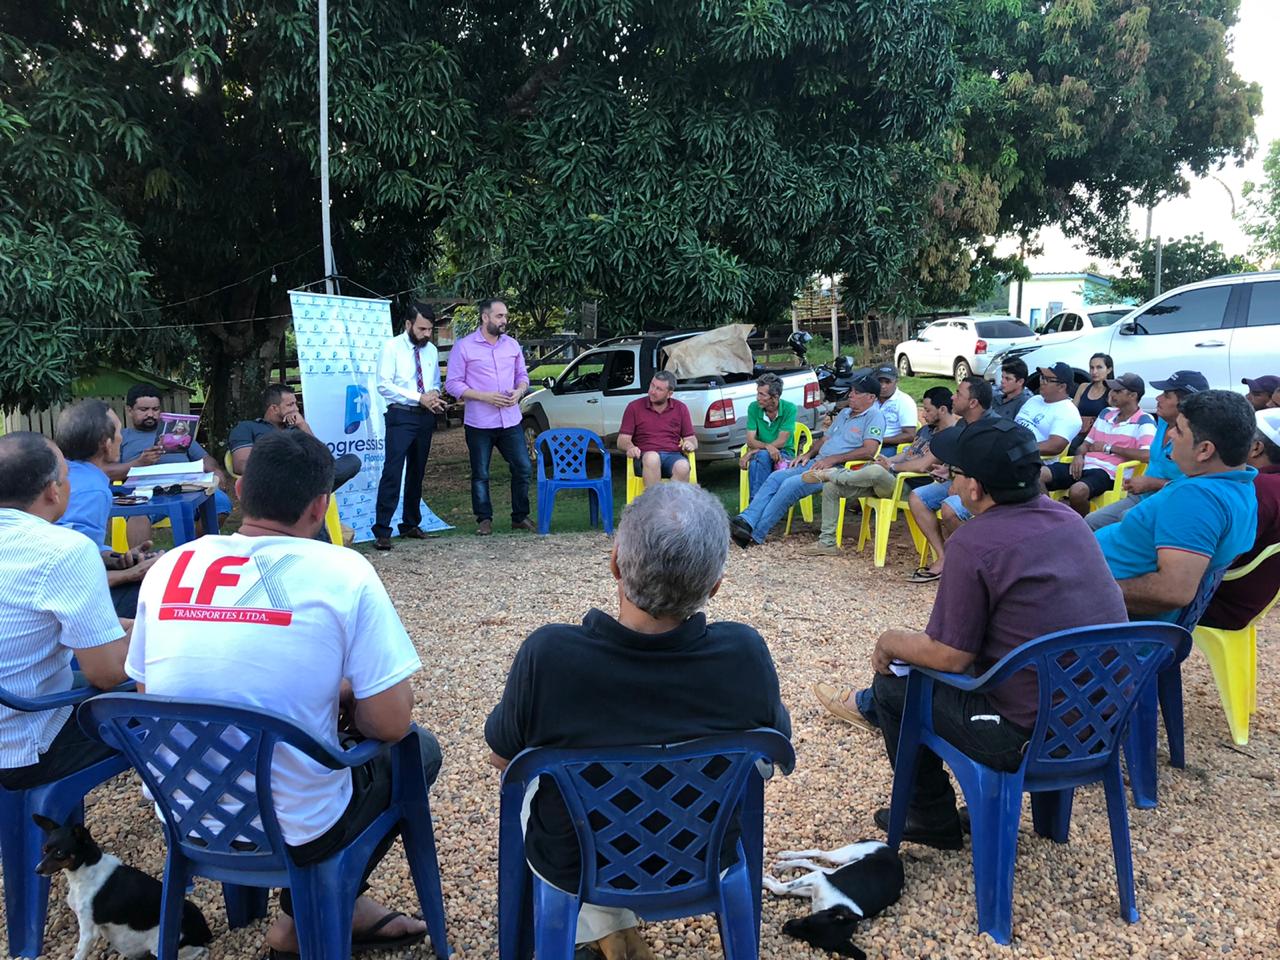 Comitiva do Progressistas Rondônia continua atividades pelo Cone Sul - noticias - progressistas rondonia